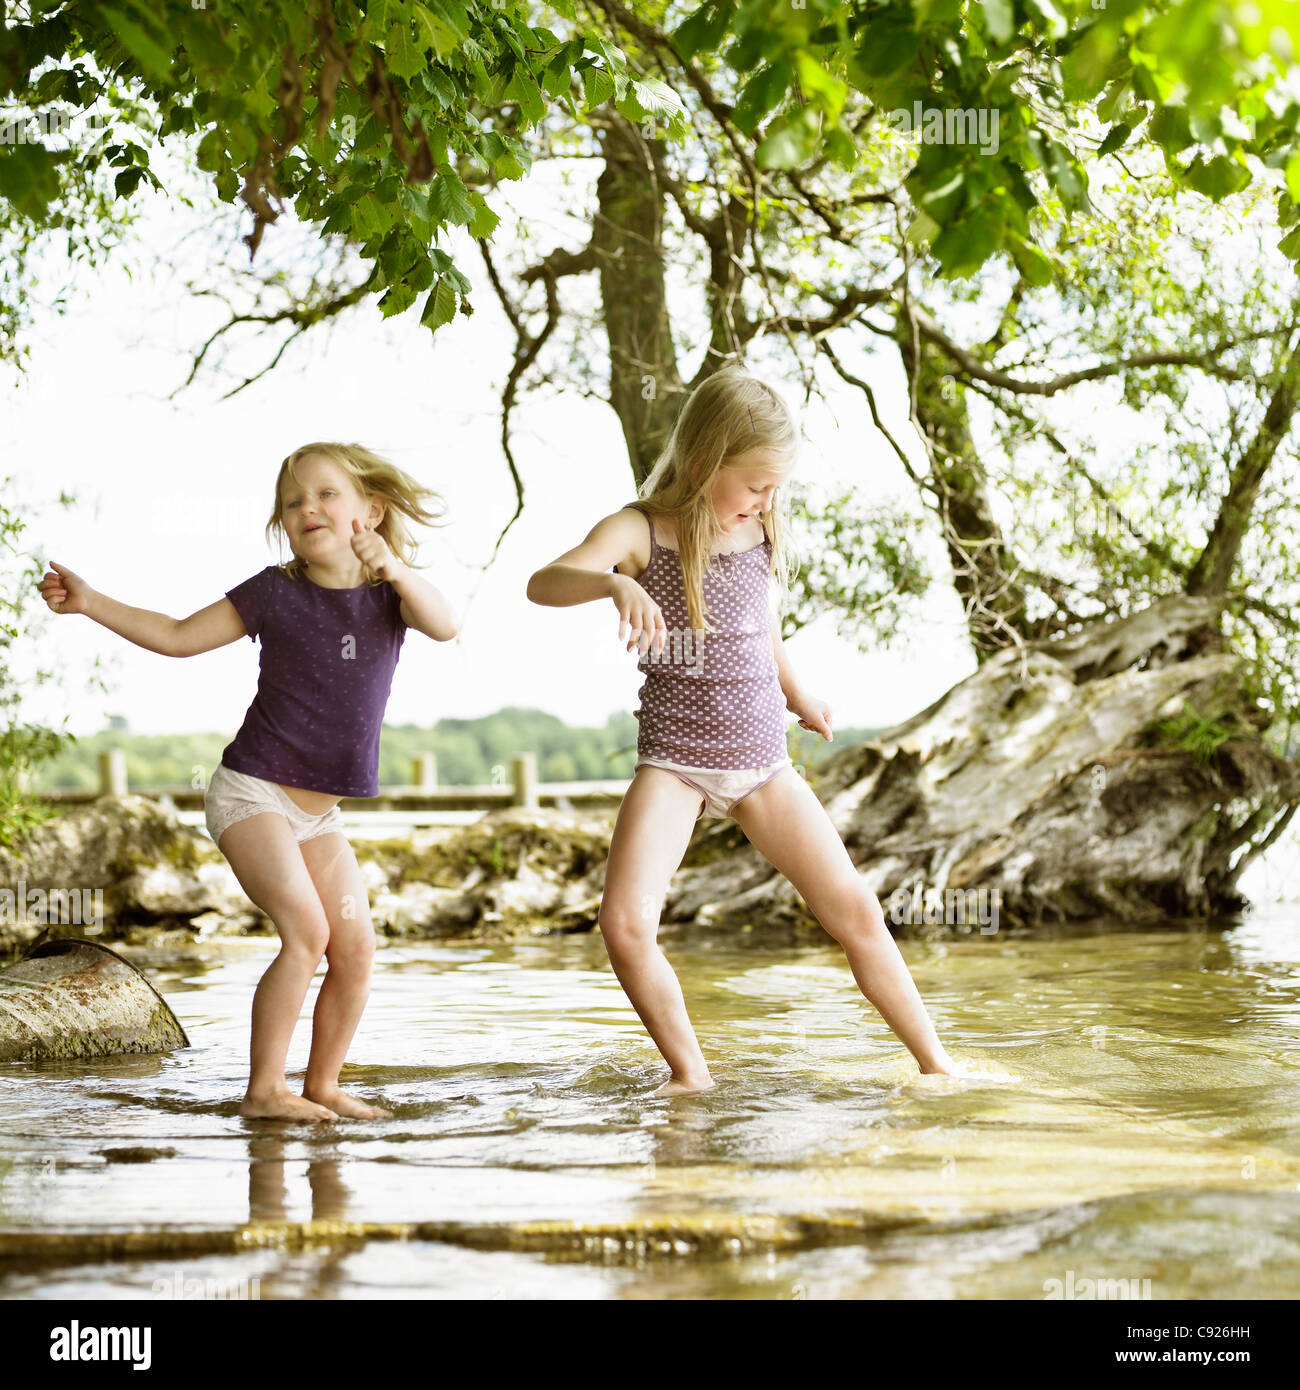 Smiling Girls Playing In Lake Stock Photo - Alamy 75C